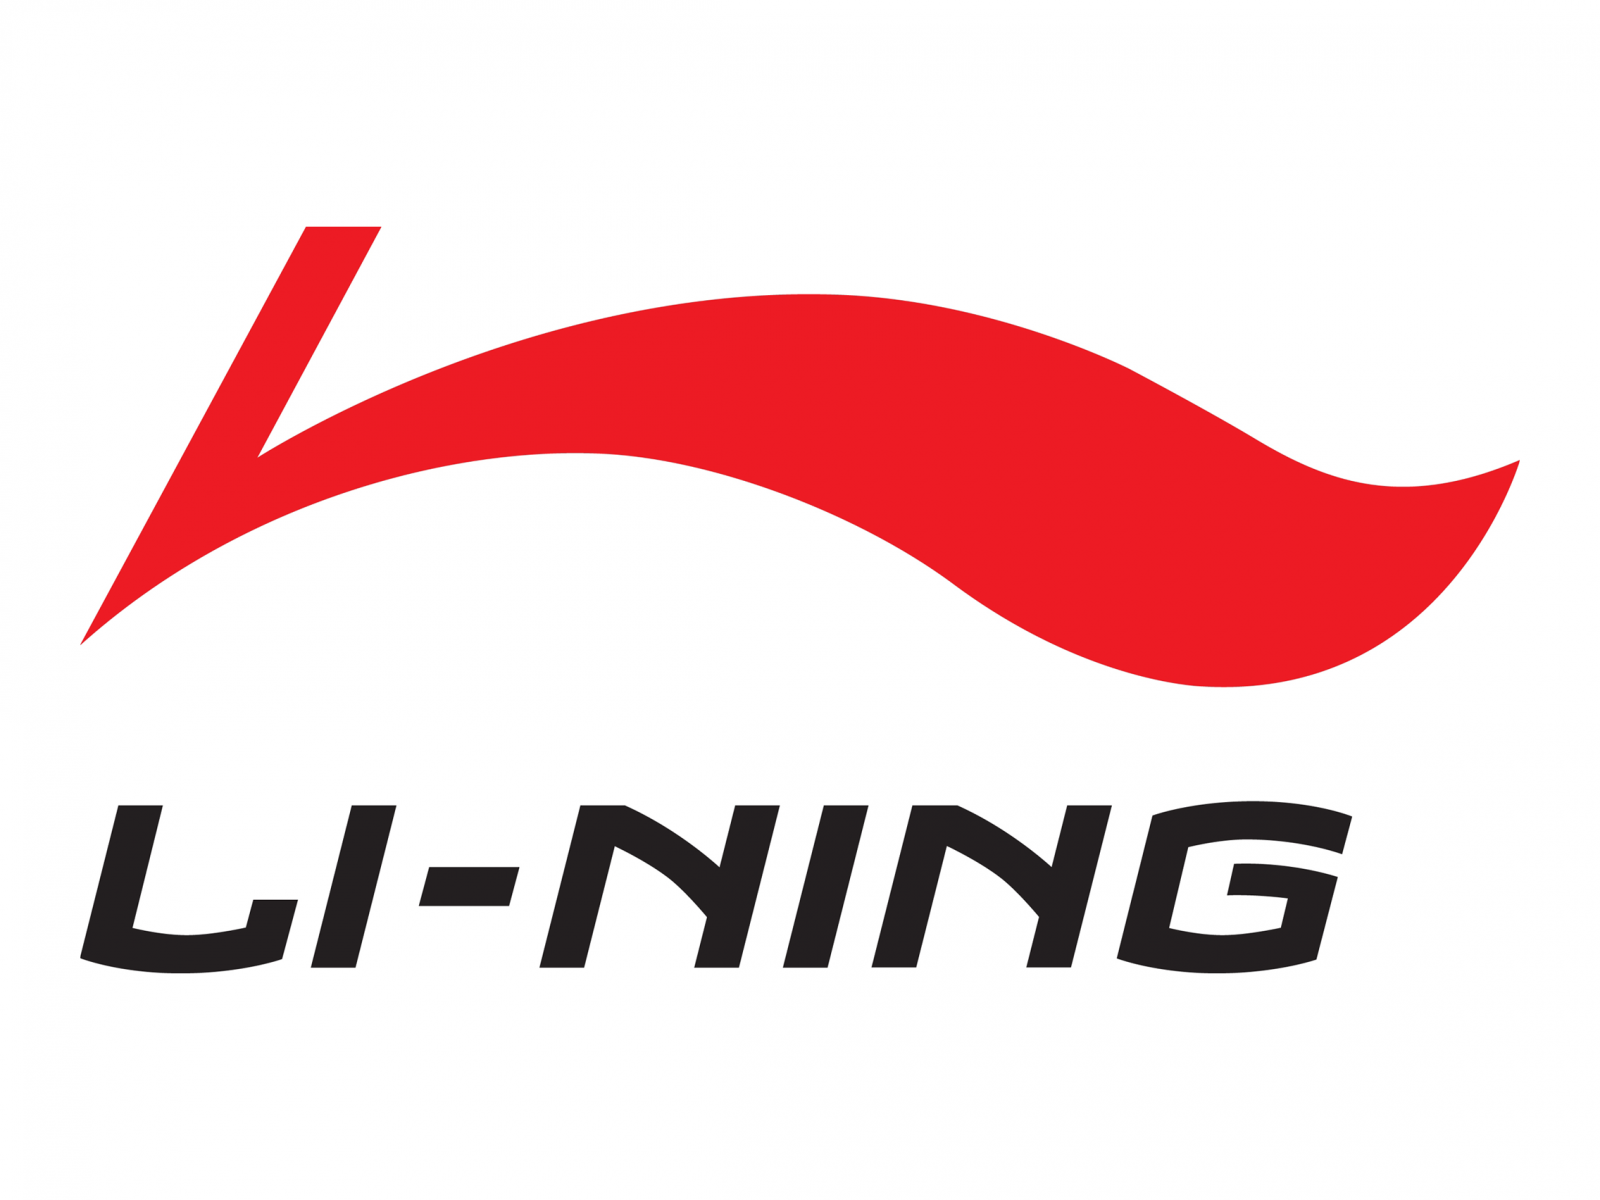 Ще одним популярним брендом китайської спортивного одягу є Li Ning